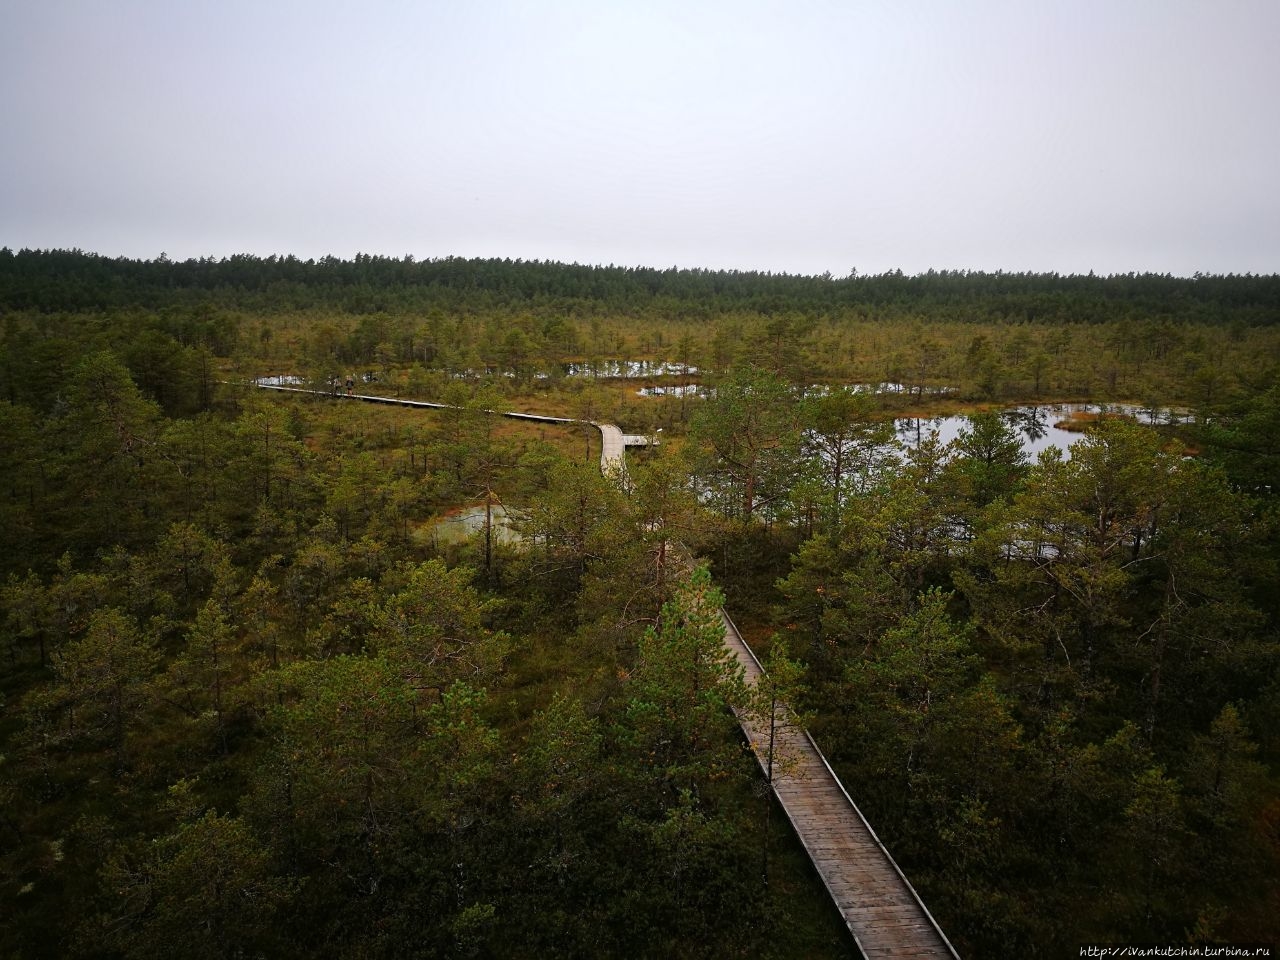 Болото Виру Болота Виру природный парк, Эстония